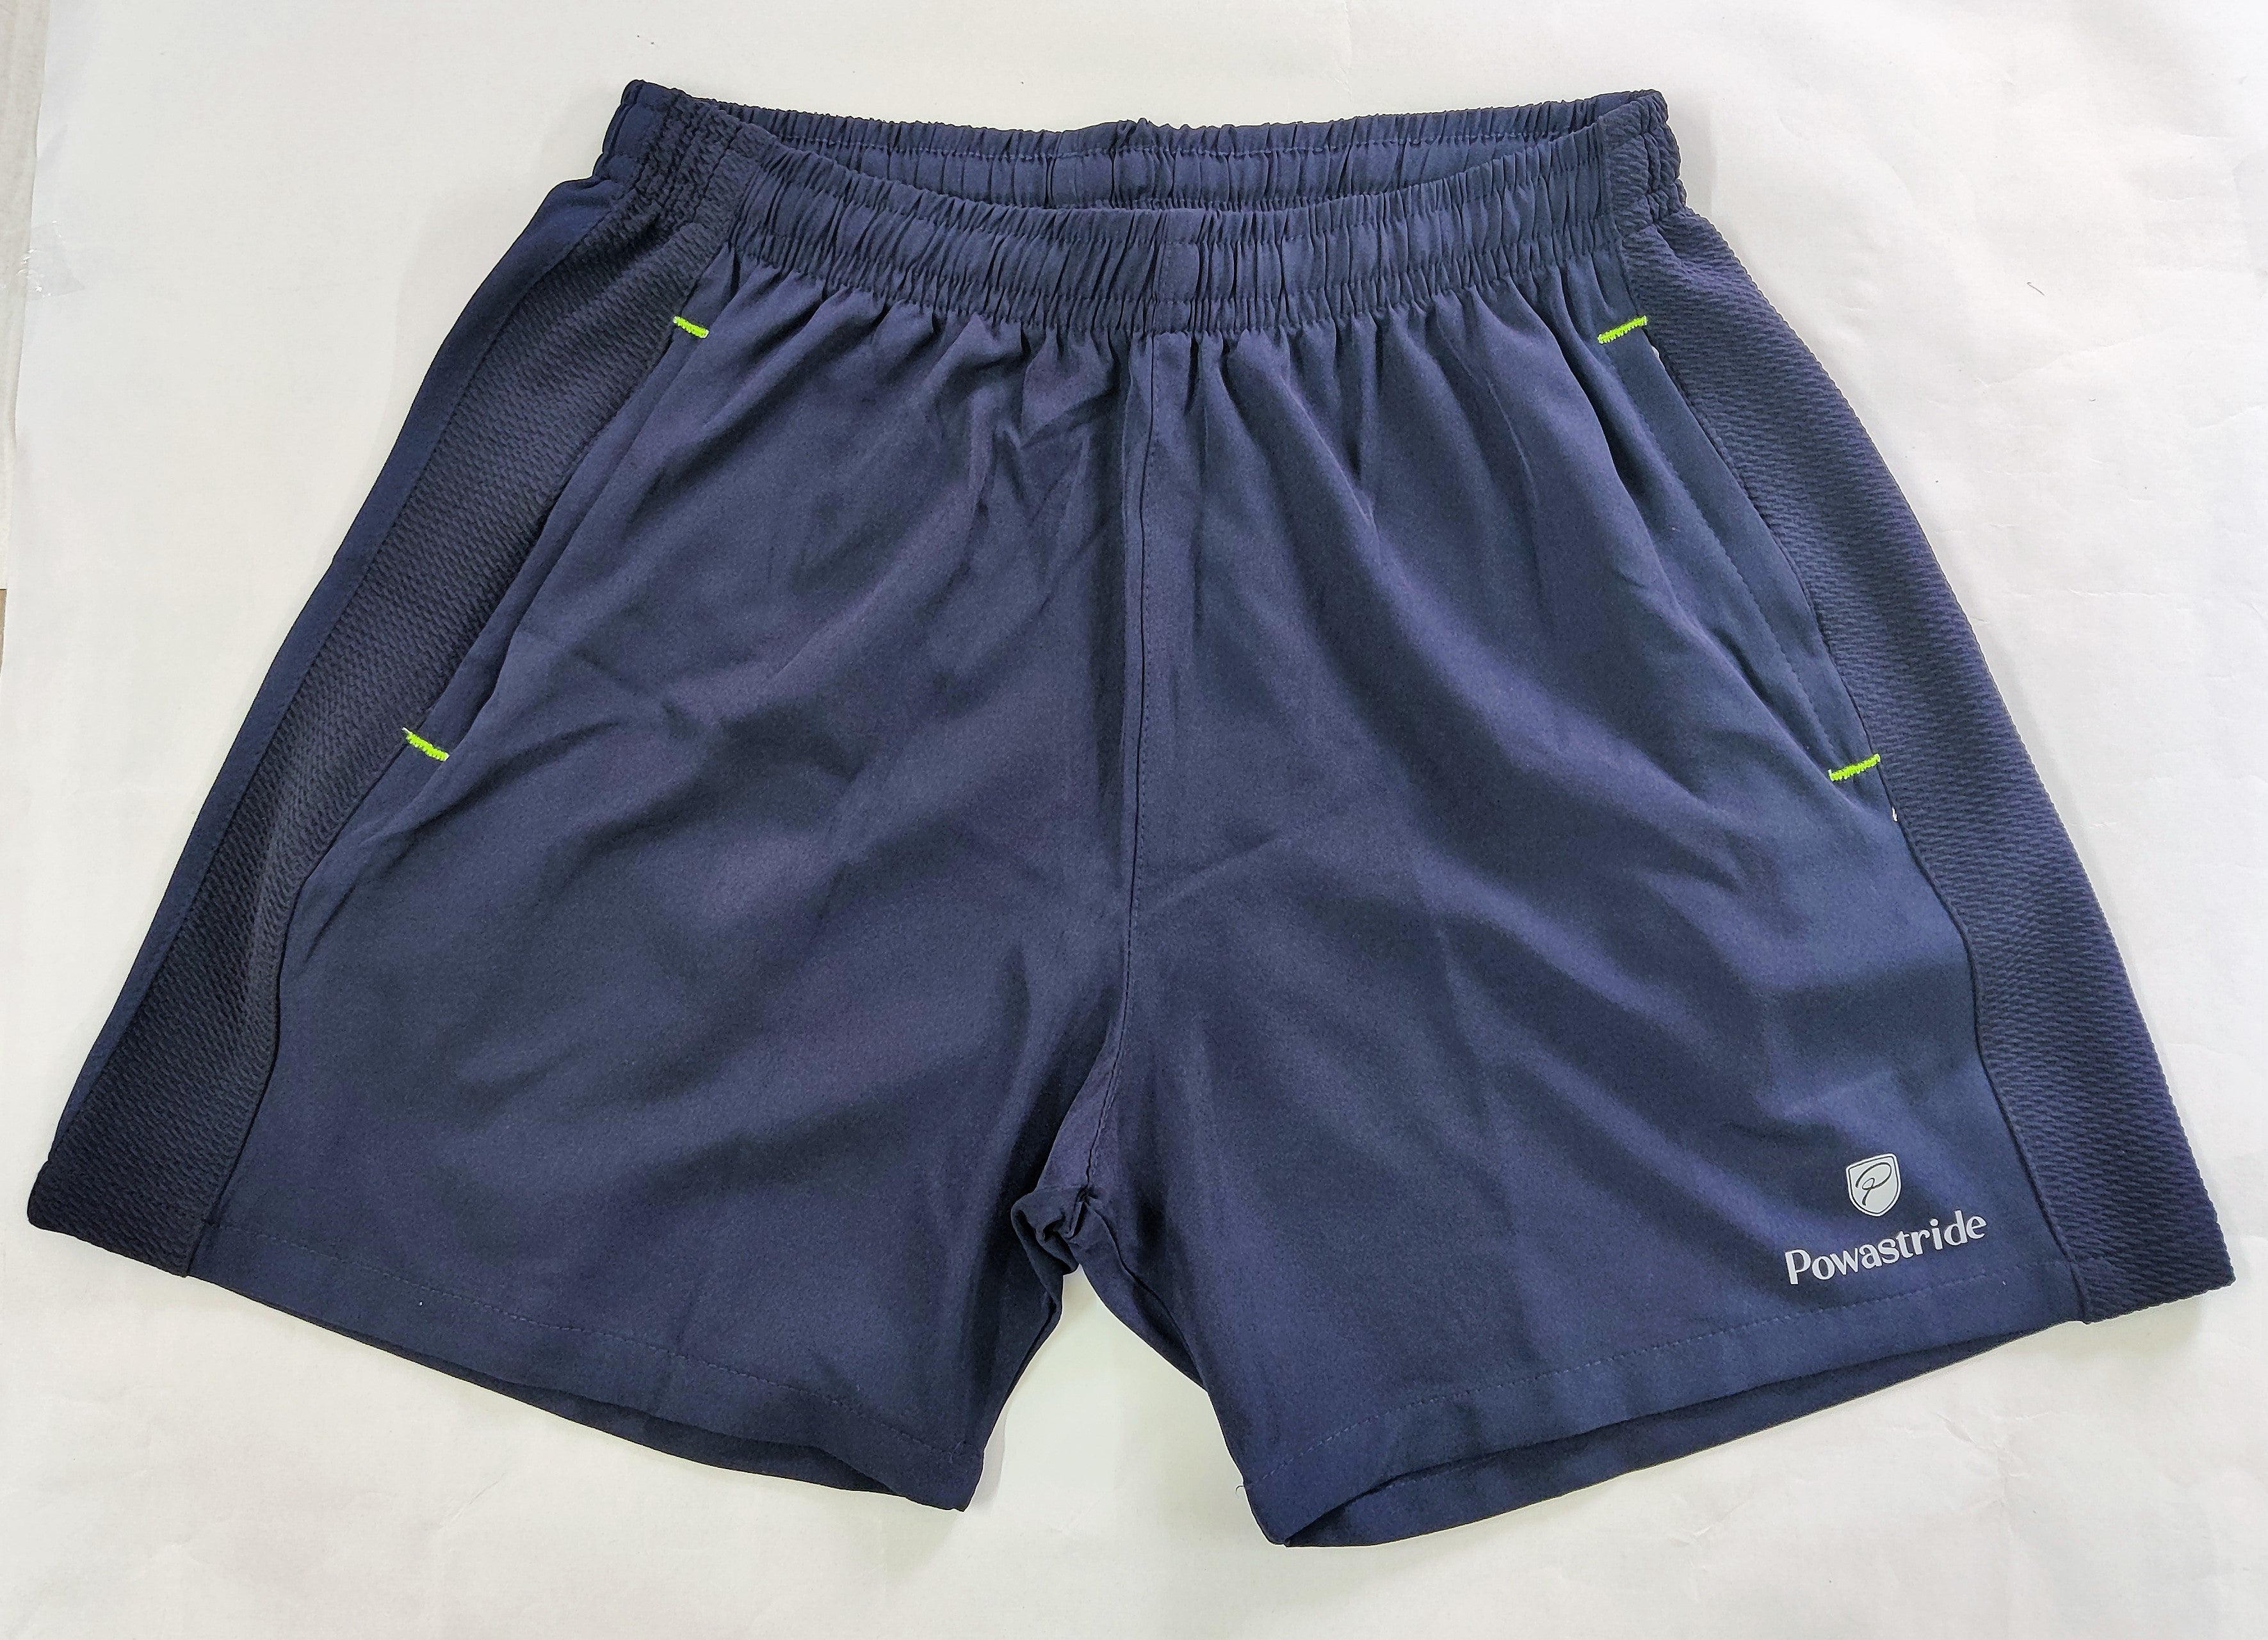 Powastride Badminton Shorts with Zipper Pockets